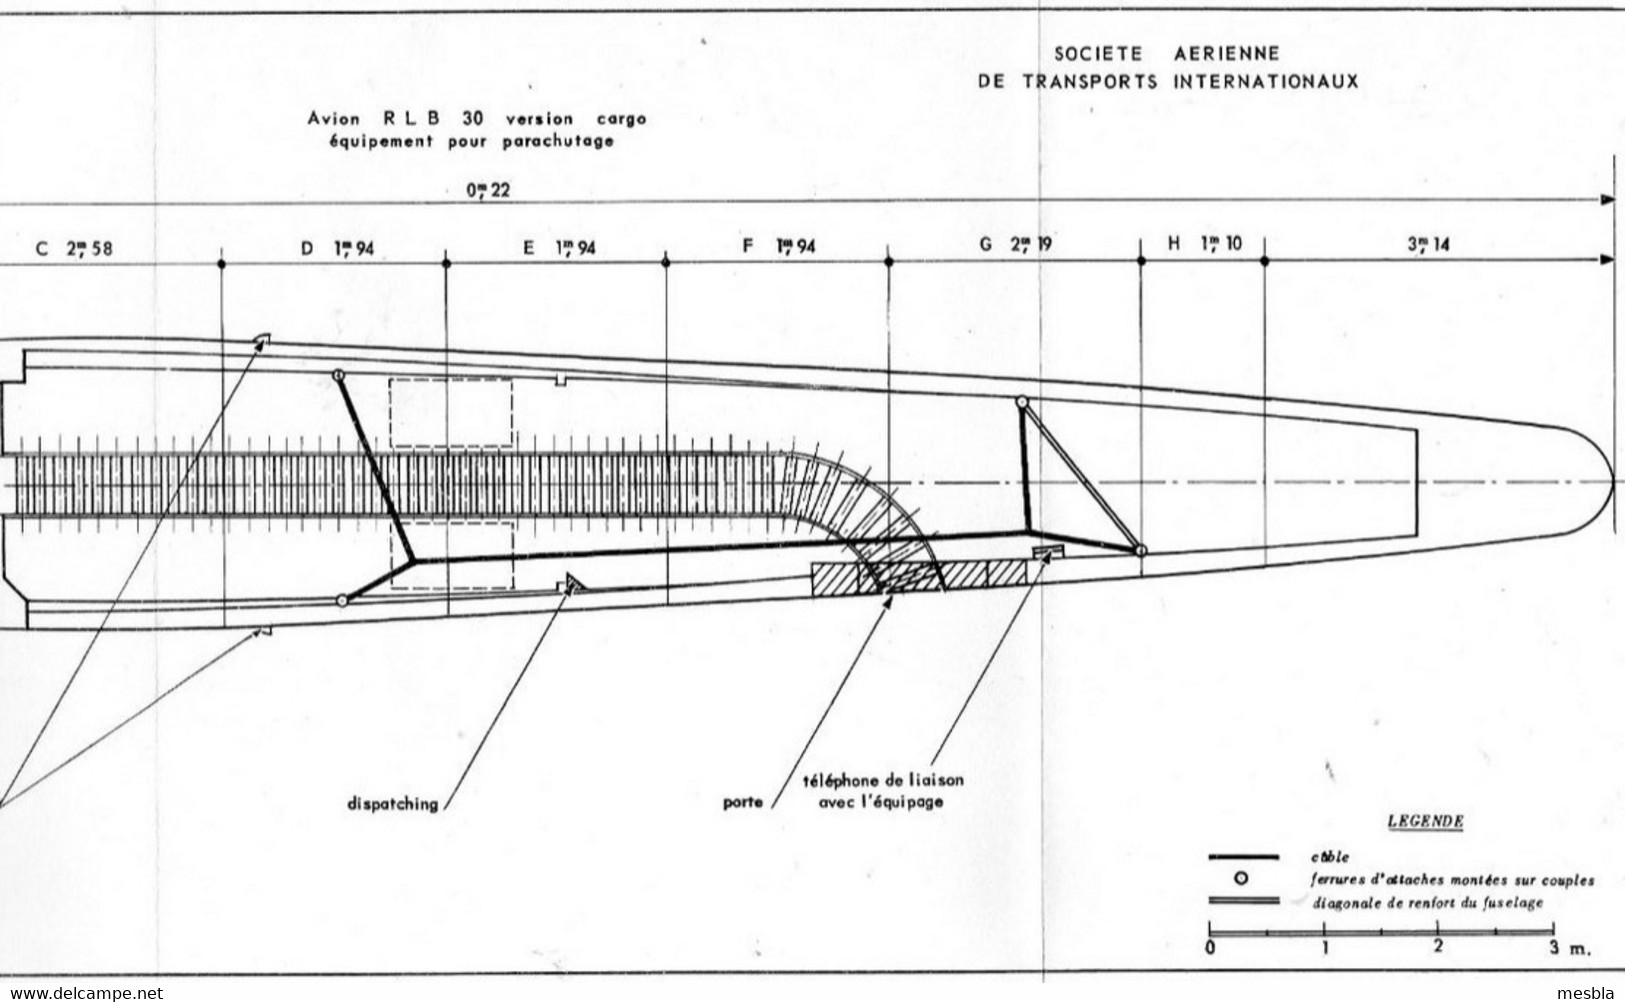 Expéditions Polaires Françaises Au Groenland  -  Missions Paul Emile Victor - Plan Avion R.L.B - 30 - Version Cargo - - Supplies And Equipment